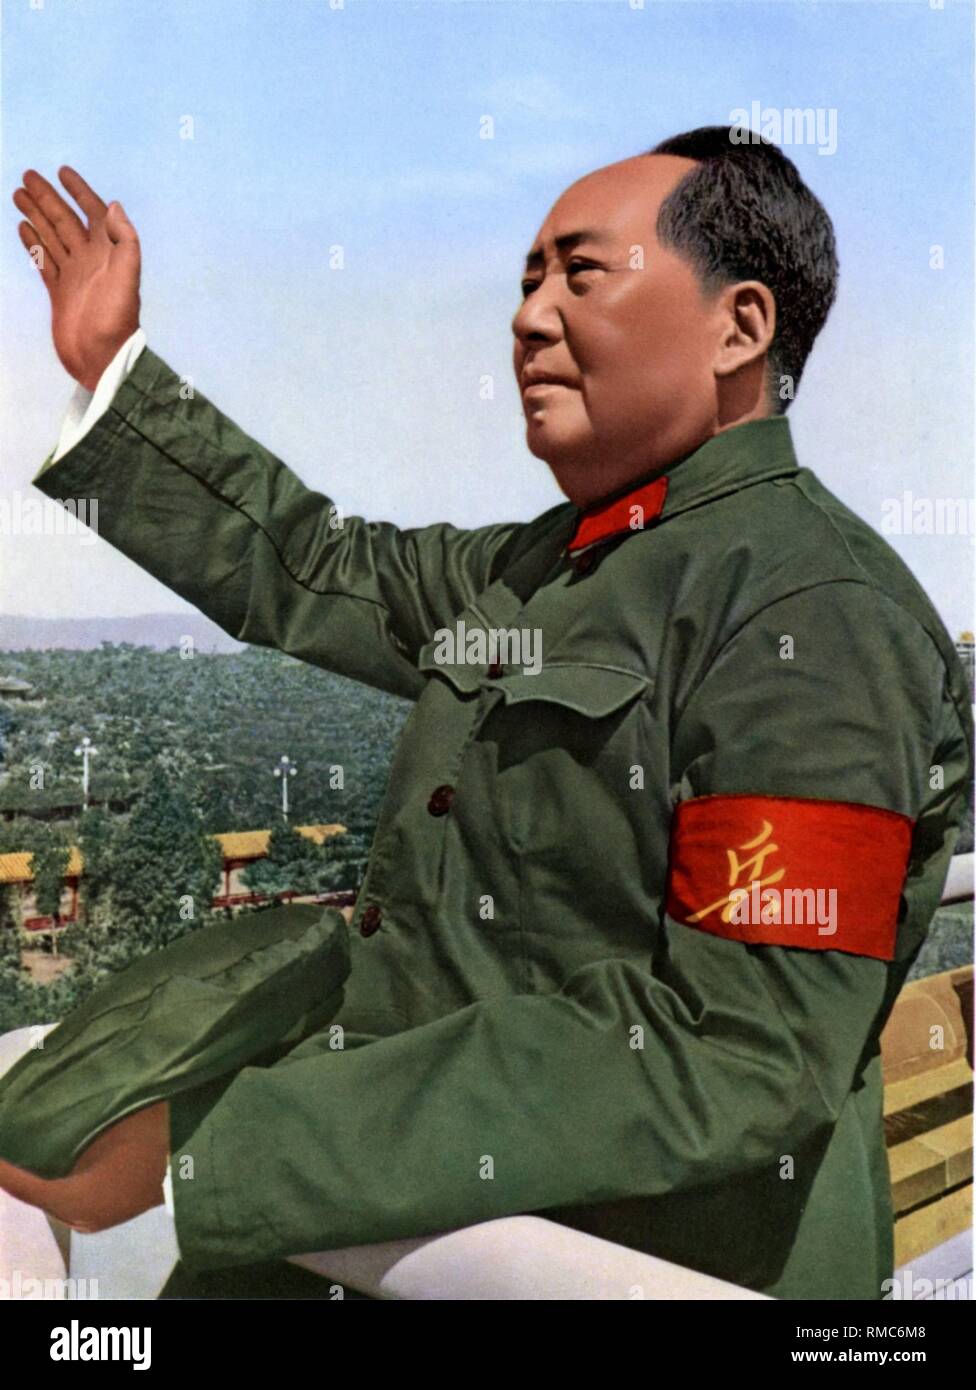 Mao Zedong - (* 26.12.1893 - 09.09.1976), zwischen 1935 - 1976 Vorsitzende der Chinesischen Kommunistischen Partei. Zwische 1954 - 1959 war er Präsident der Volksrepublik China. Chinesische Propaganda Poster der "Große Führer" Mao Zedong nach dem Schwimmen in der Jangtze von 1966, undatiert. Stockfoto